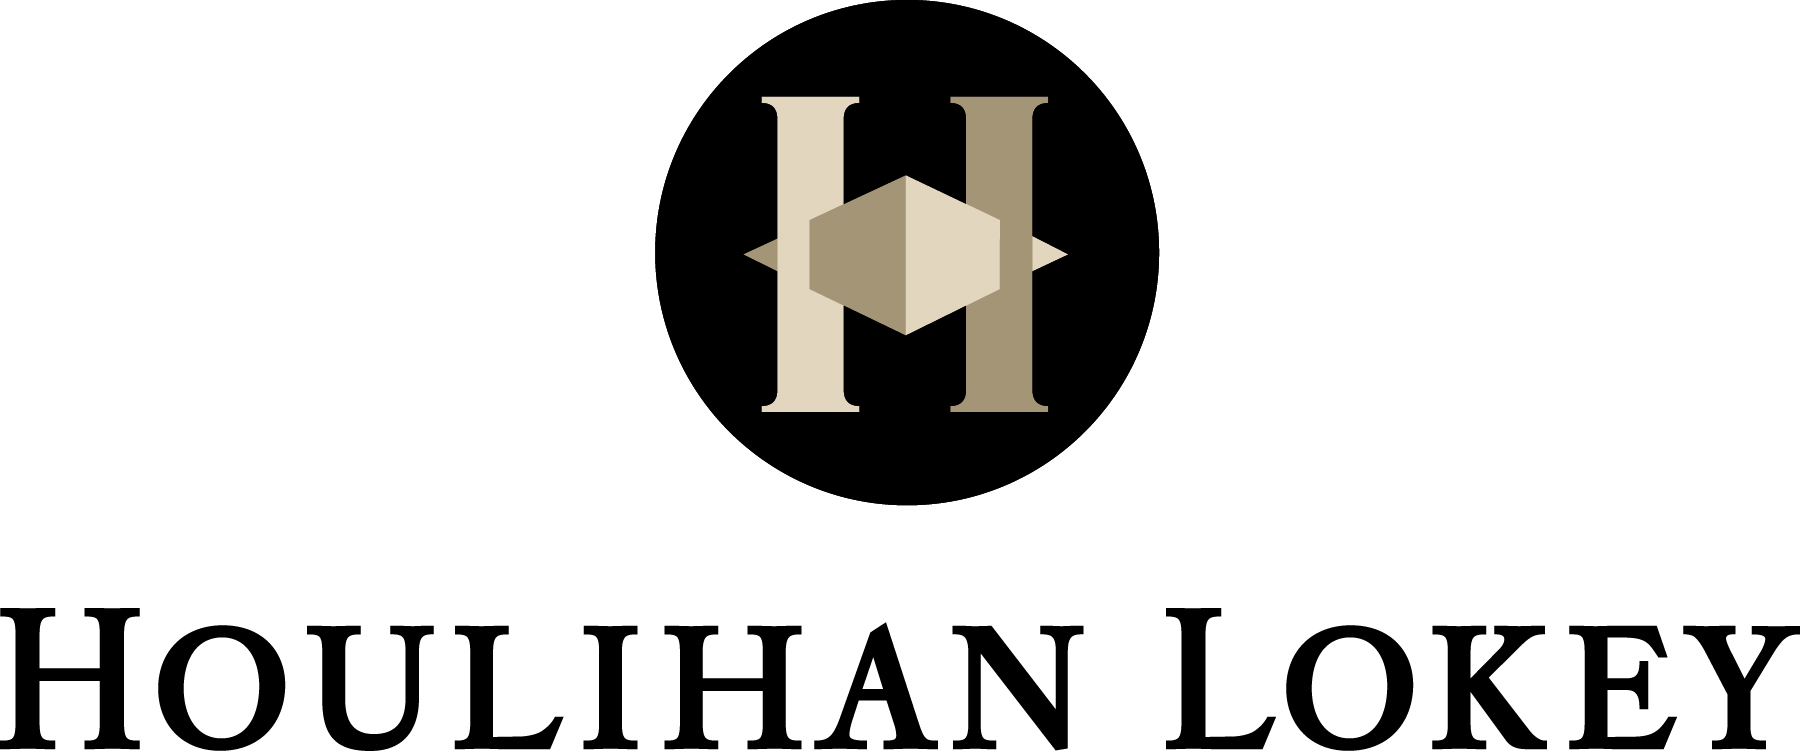 Houlihan Lokey Inc Brand Logo